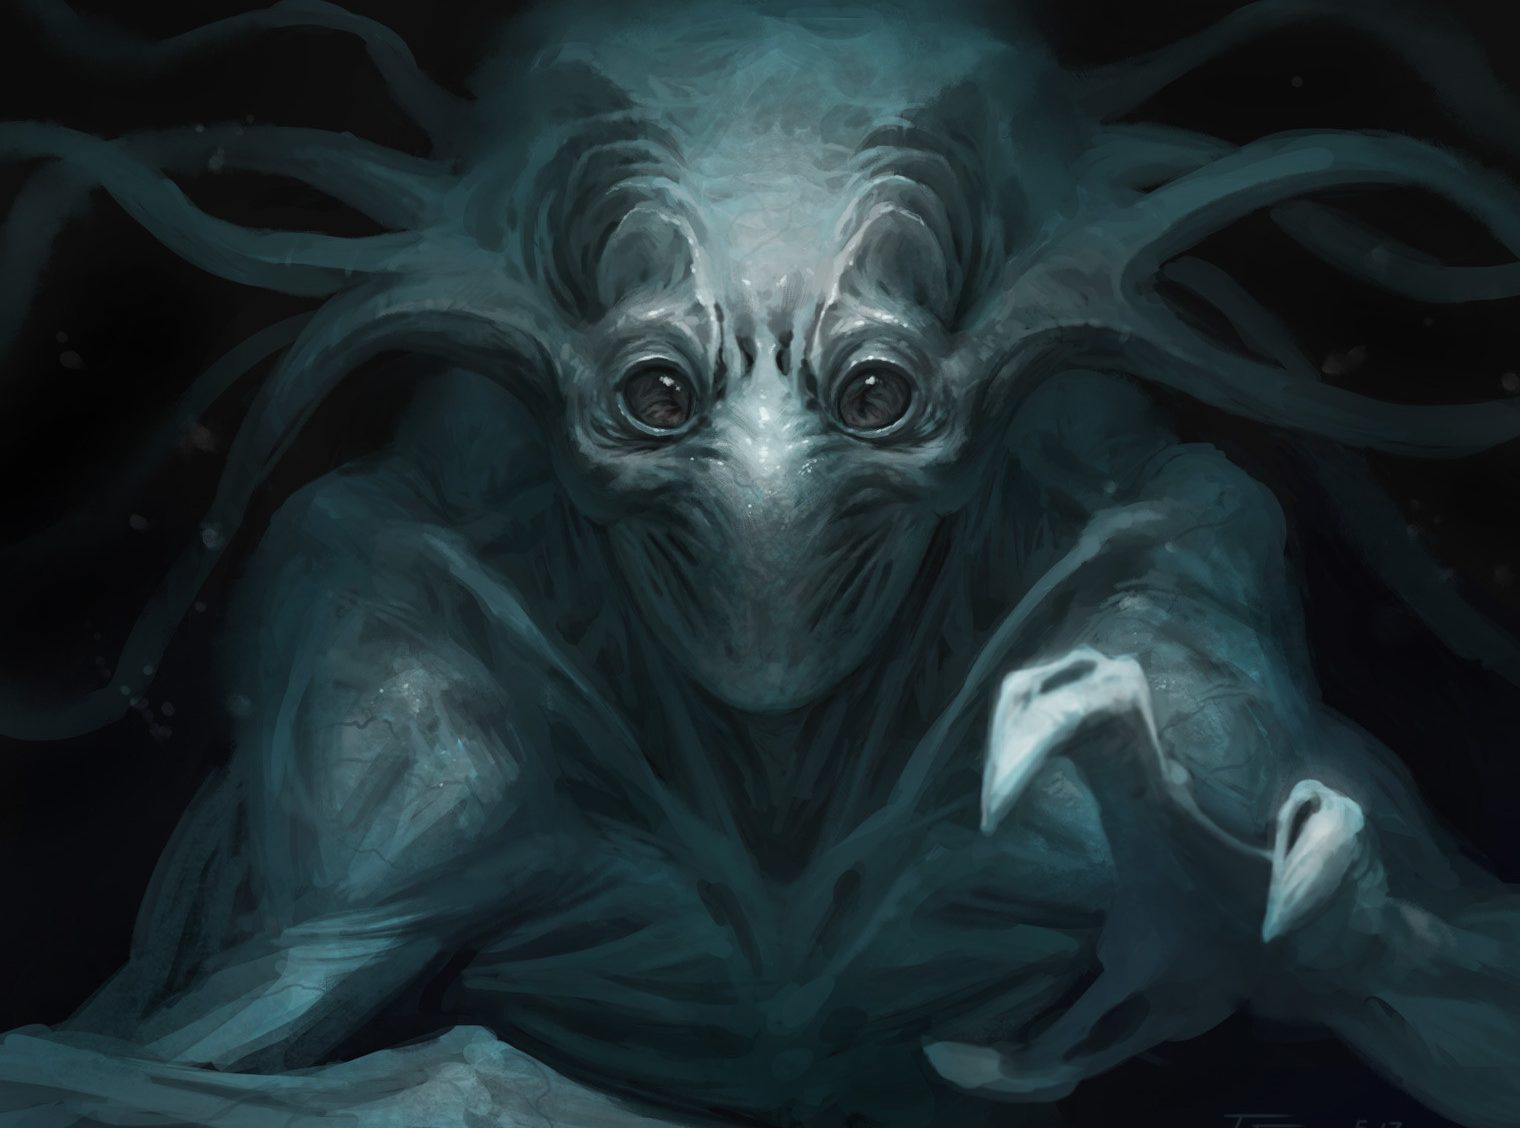 Alien concept by Taran Fiddler